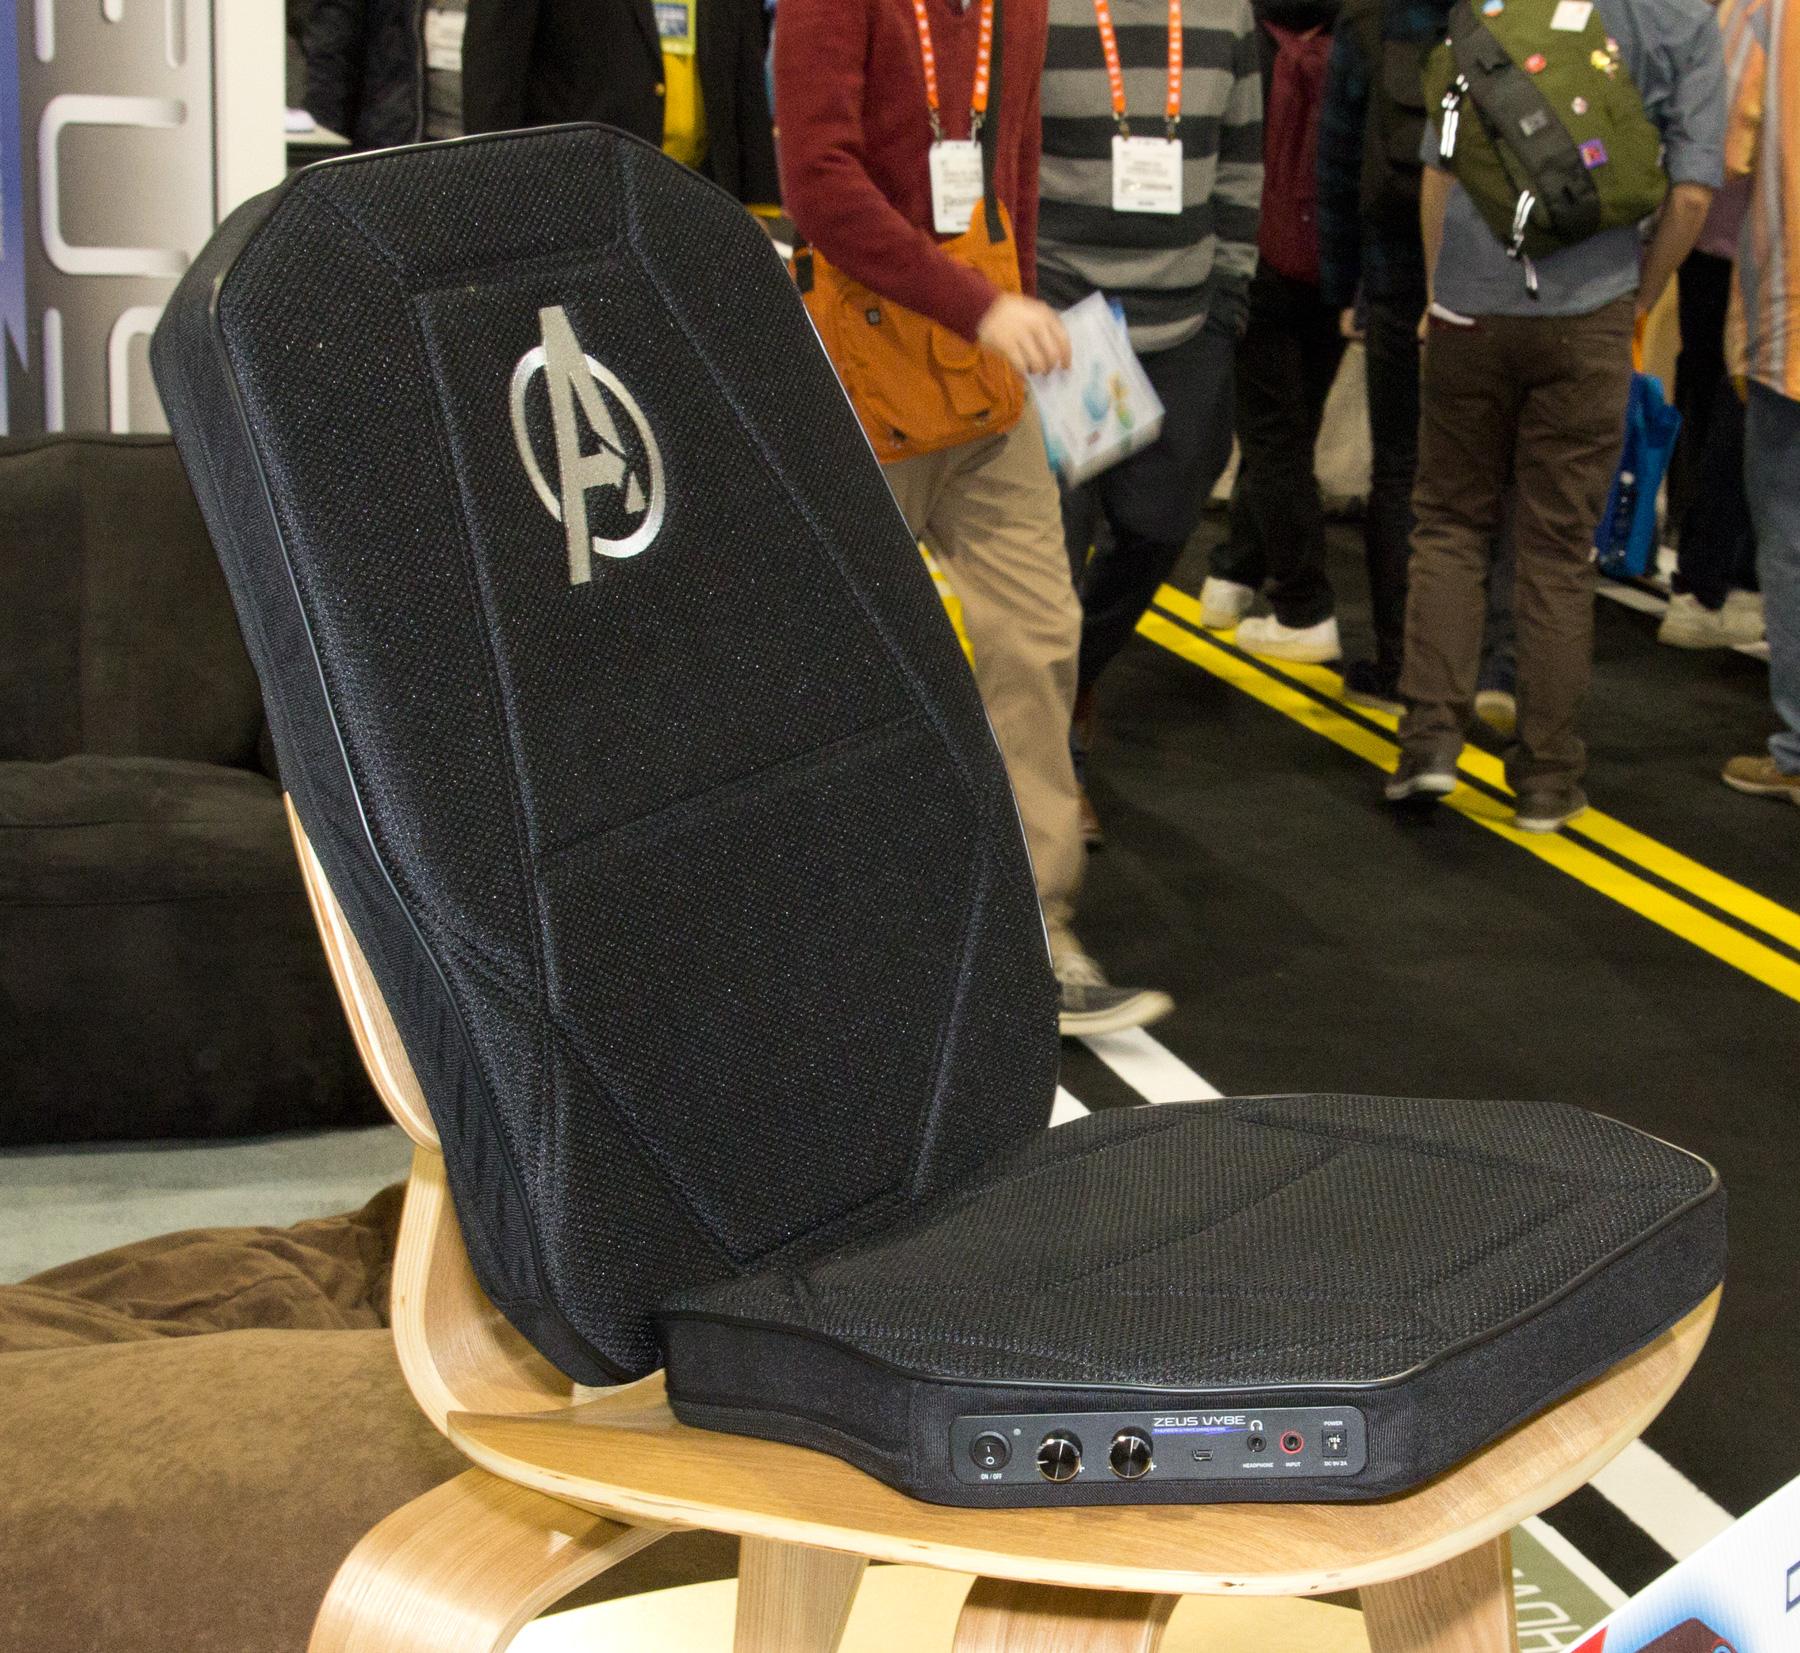 Hva med en stol med innebygget romperister?Foto: Rolf B. Wegner, Hardware.no